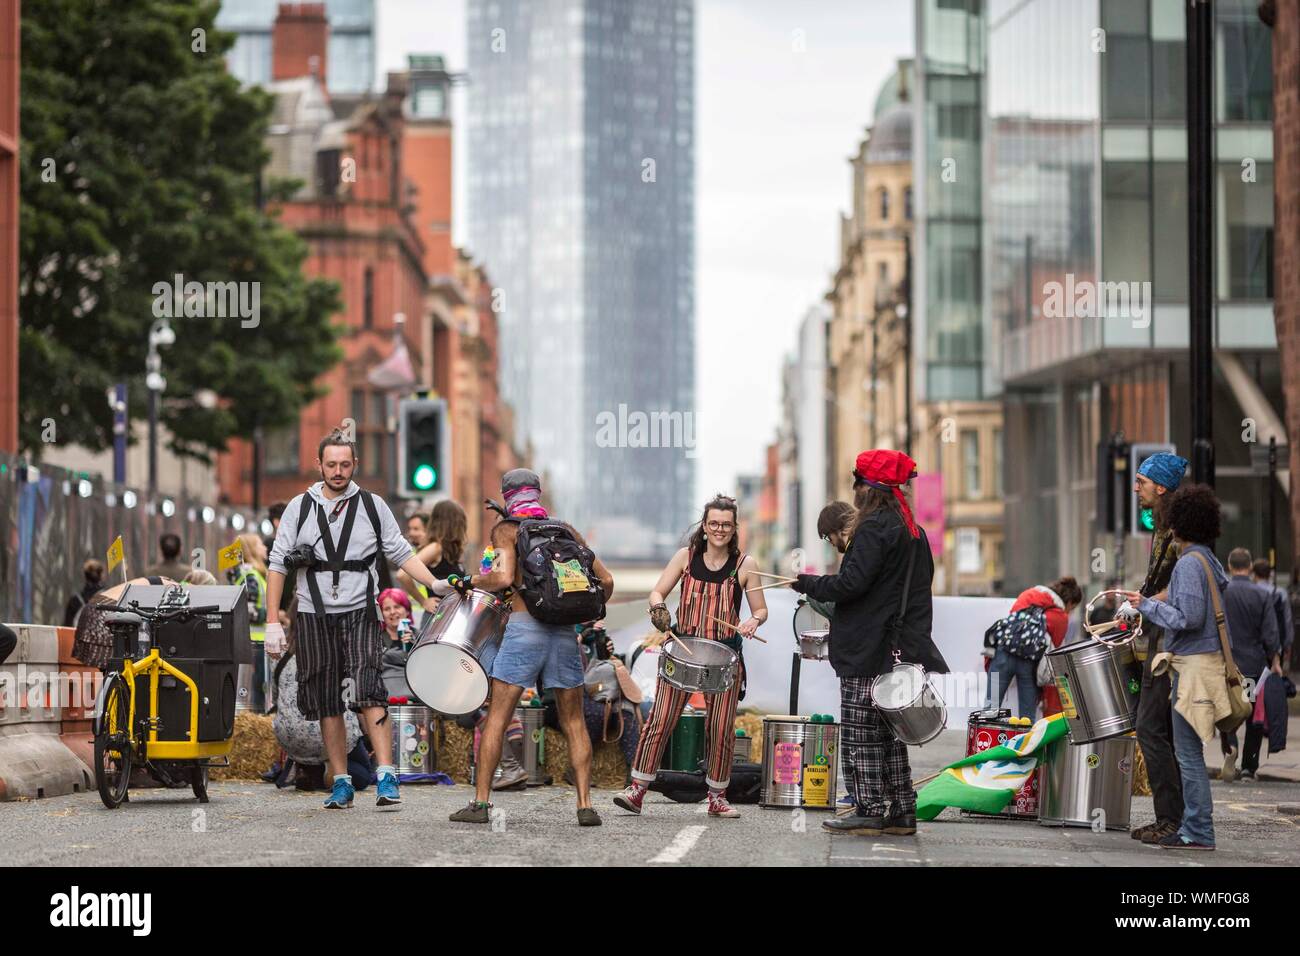 Extinction les manifestants de la rébellion occupent aujourd'hui Deansgate dans le centre-ville de Manchester (Vendredi 30 août 2019) Banque D'Images